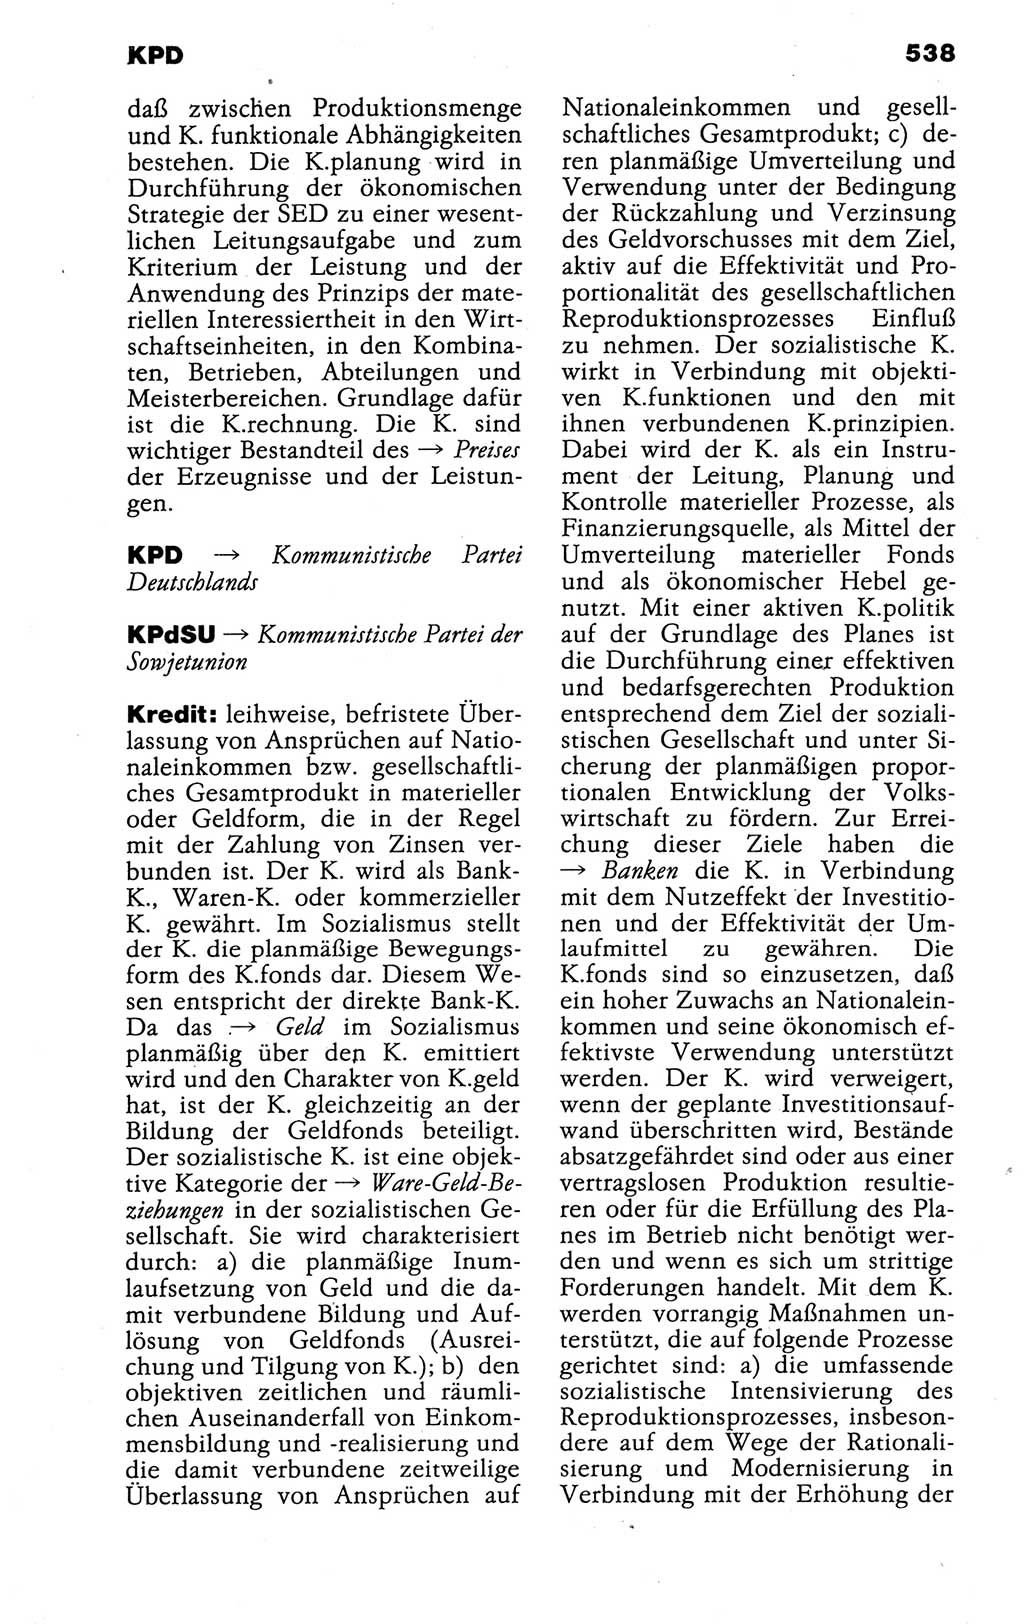 Kleines politisches Wörterbuch [Deutsche Demokratische Republik (DDR)] 1988, Seite 538 (Kl. pol. Wb. DDR 1988, S. 538)